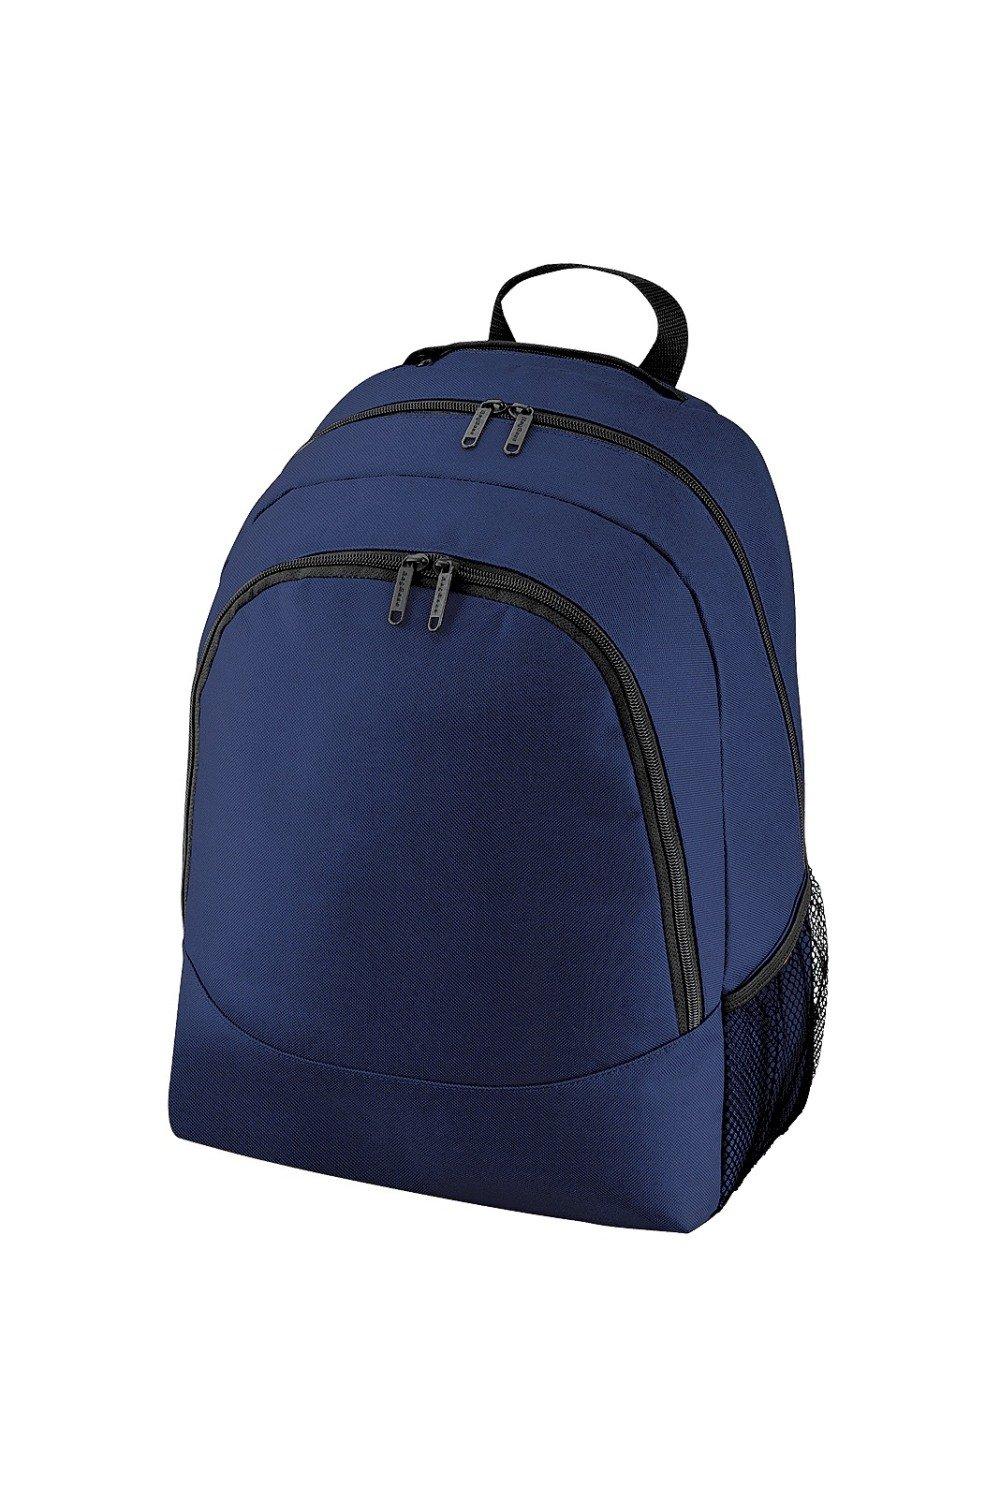 Обычный универсальный рюкзак/сумка-рюкзак (18 литров) Bagbase, темно-синий чехол задняя панель накладка бампер mypads mp3 для huawei honor 6 plus pe ul00 tl20 tl10 cl00 75 7 противоударный